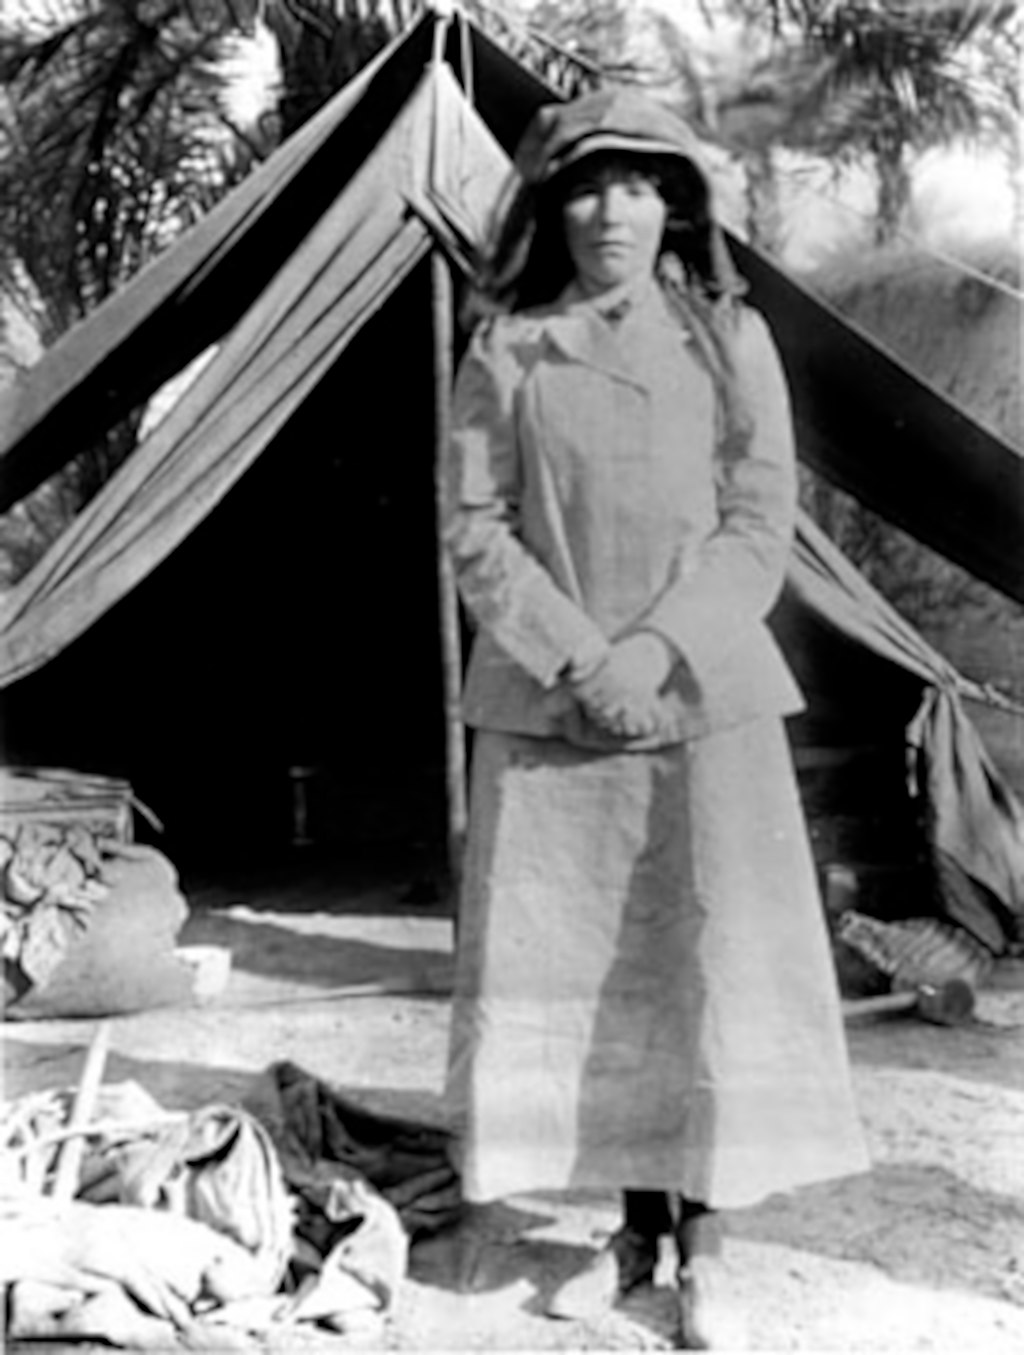 Gertrude Bell in Iraq, 1909 (Immagine in Pubblico dominio)